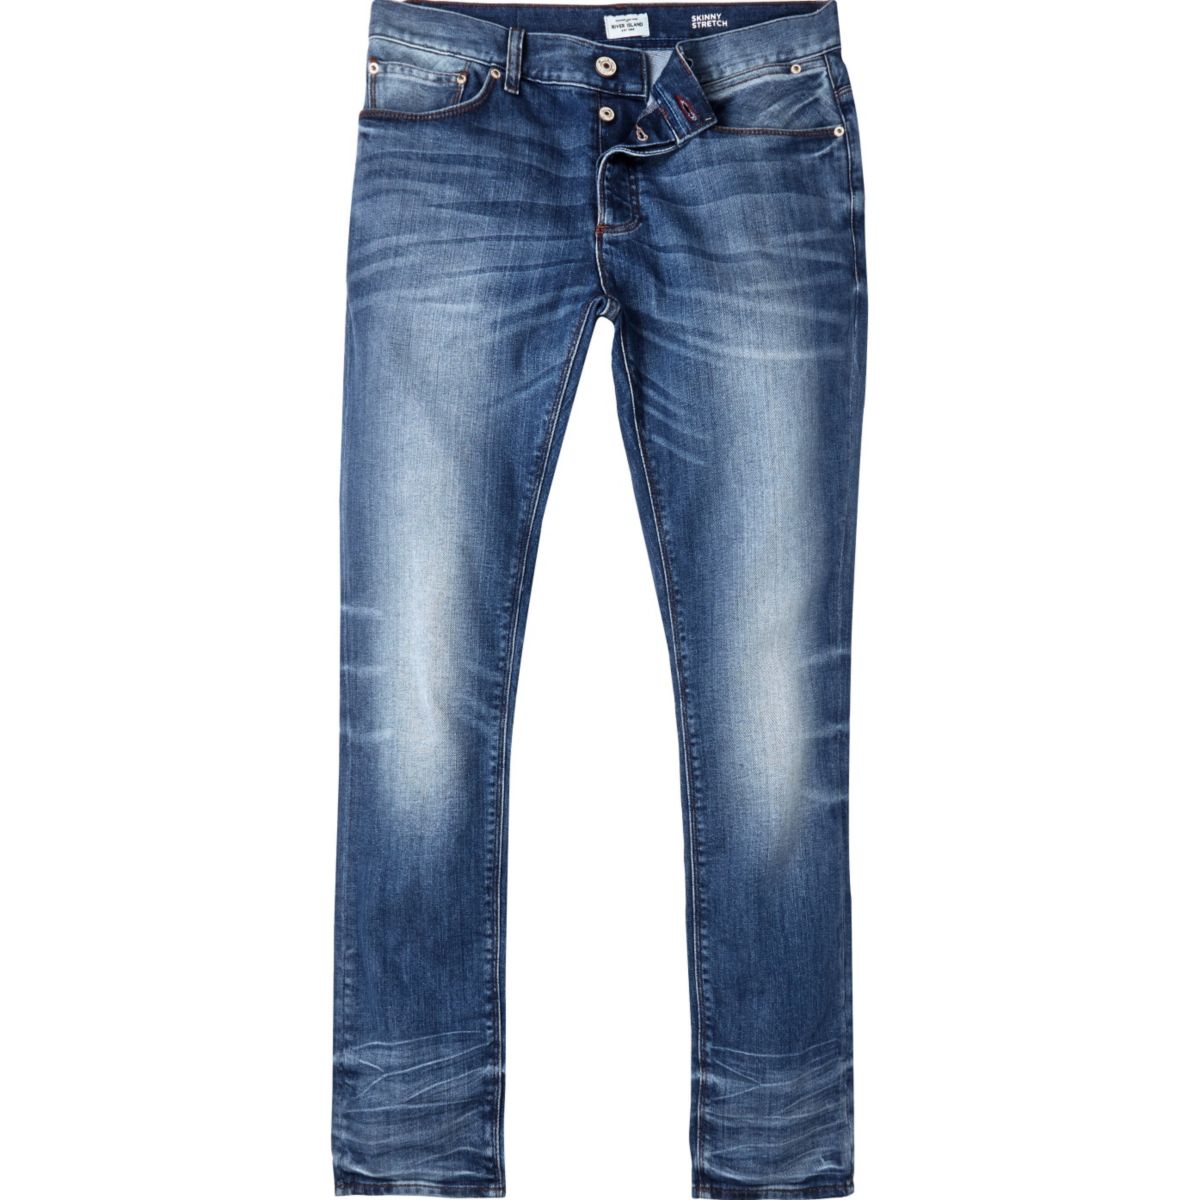 Blue vintage wash Sid skinny jeans - Jeans - Sale - men